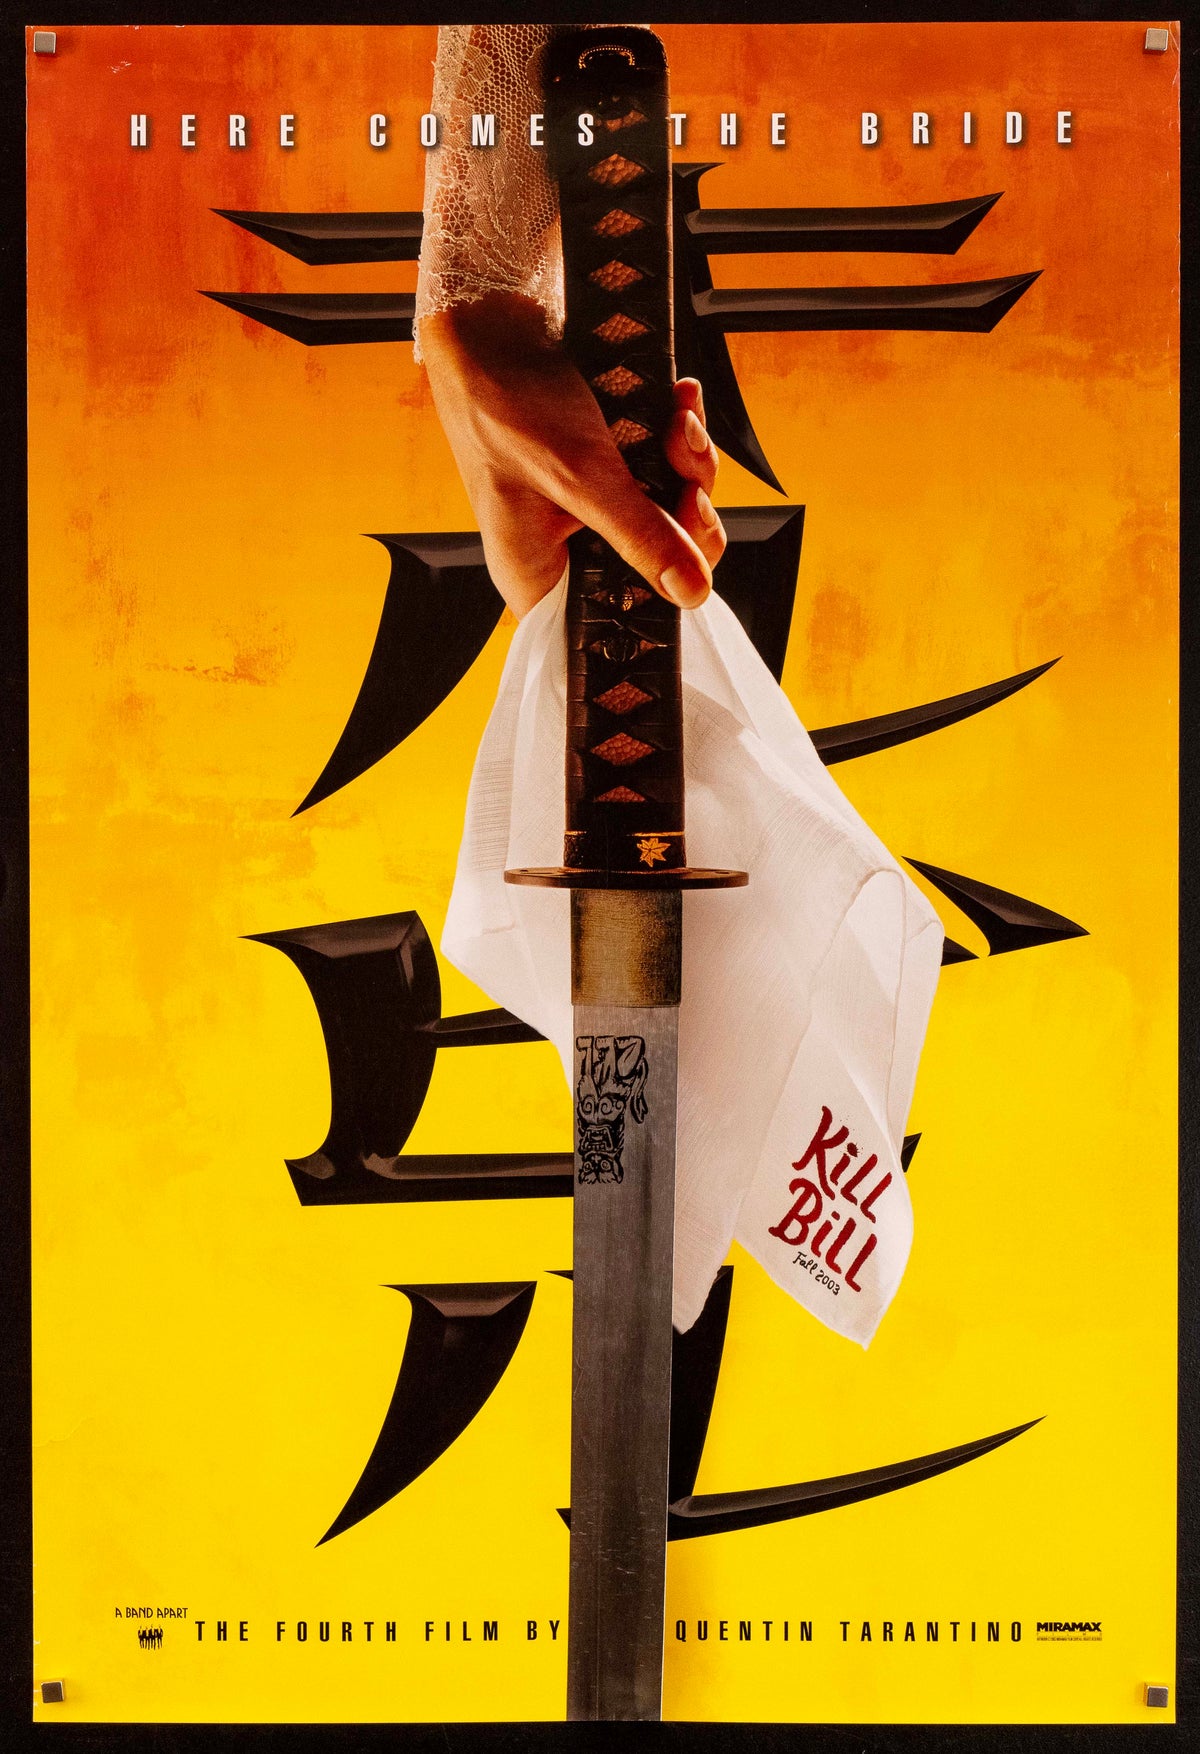 Kill Bill Volume 1 1 Sheet (27x41) Original Vintage Movie Poster